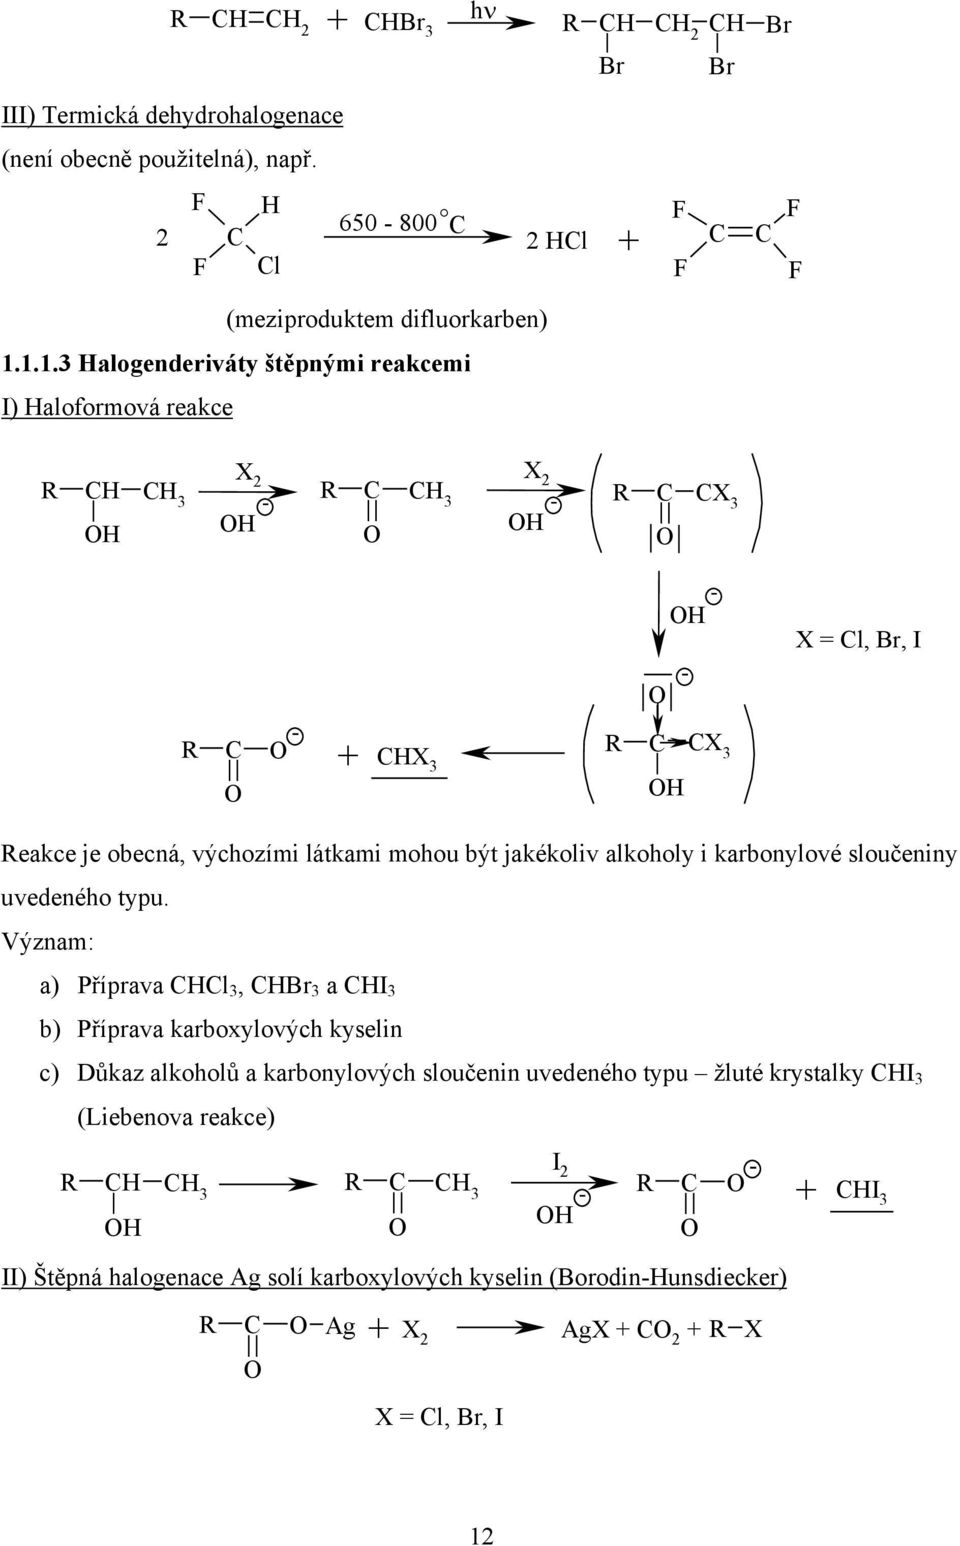 alkoholy i karbonylové sloučeniny uvedeného typu.